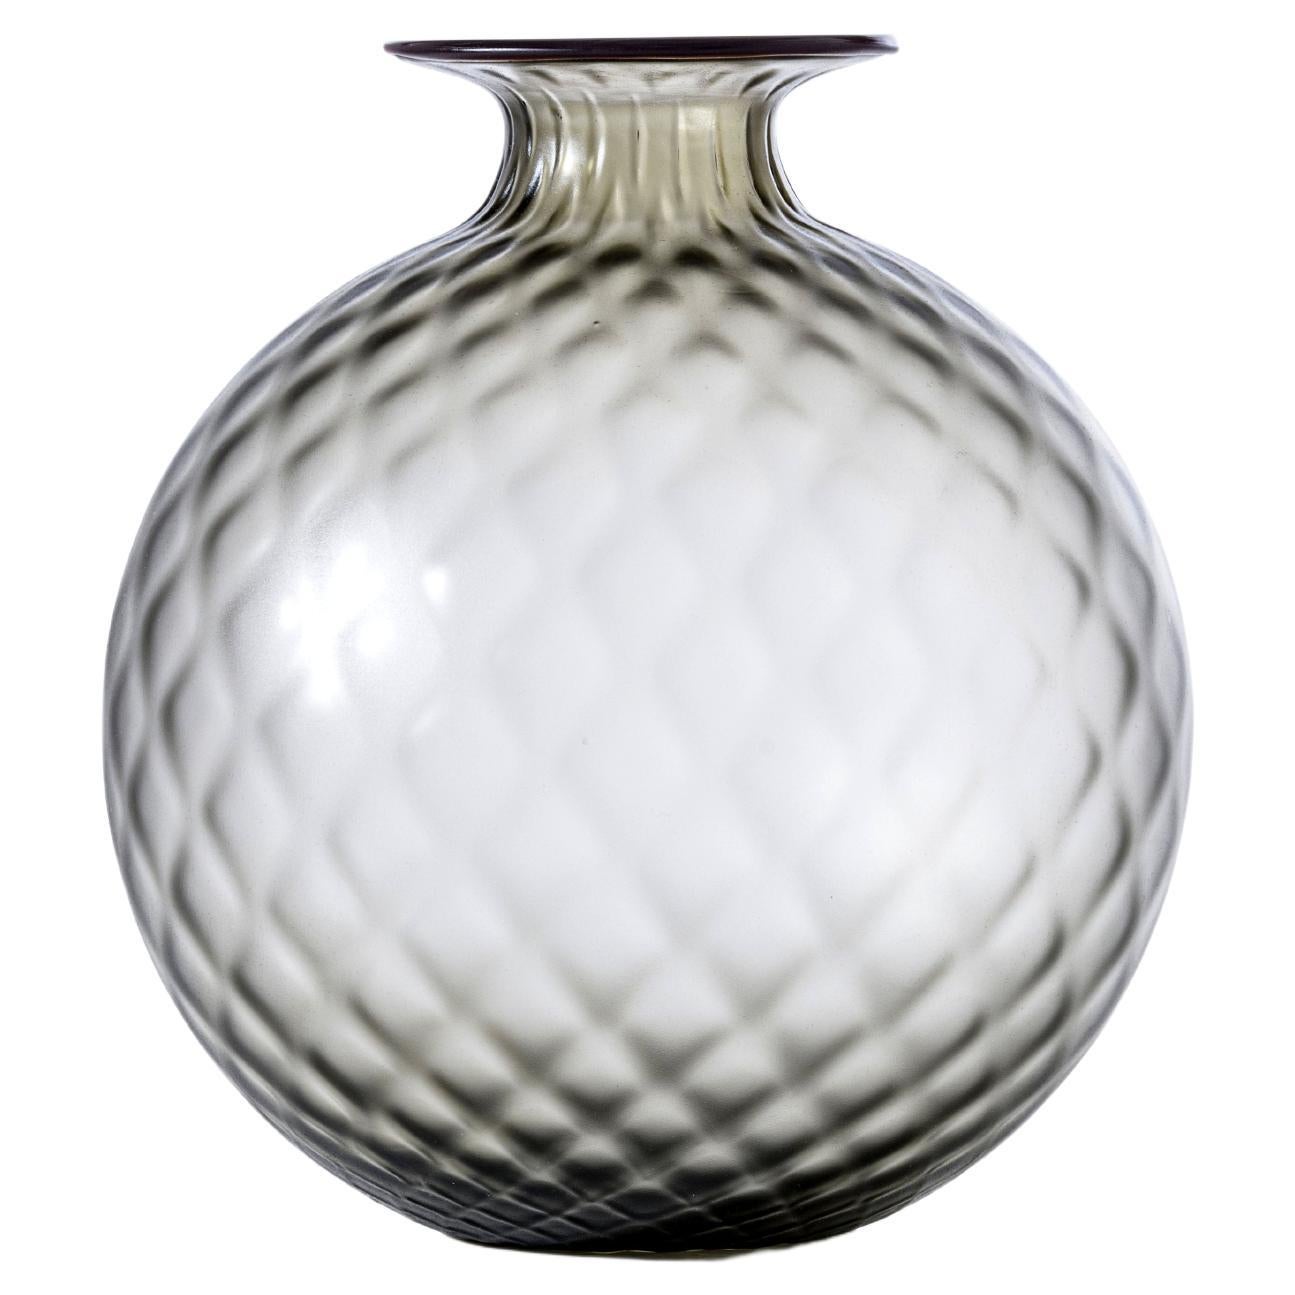 Monofiore Balaton Sabbiato Short Glass Vase in Grey Red Thread by Venini For Sale